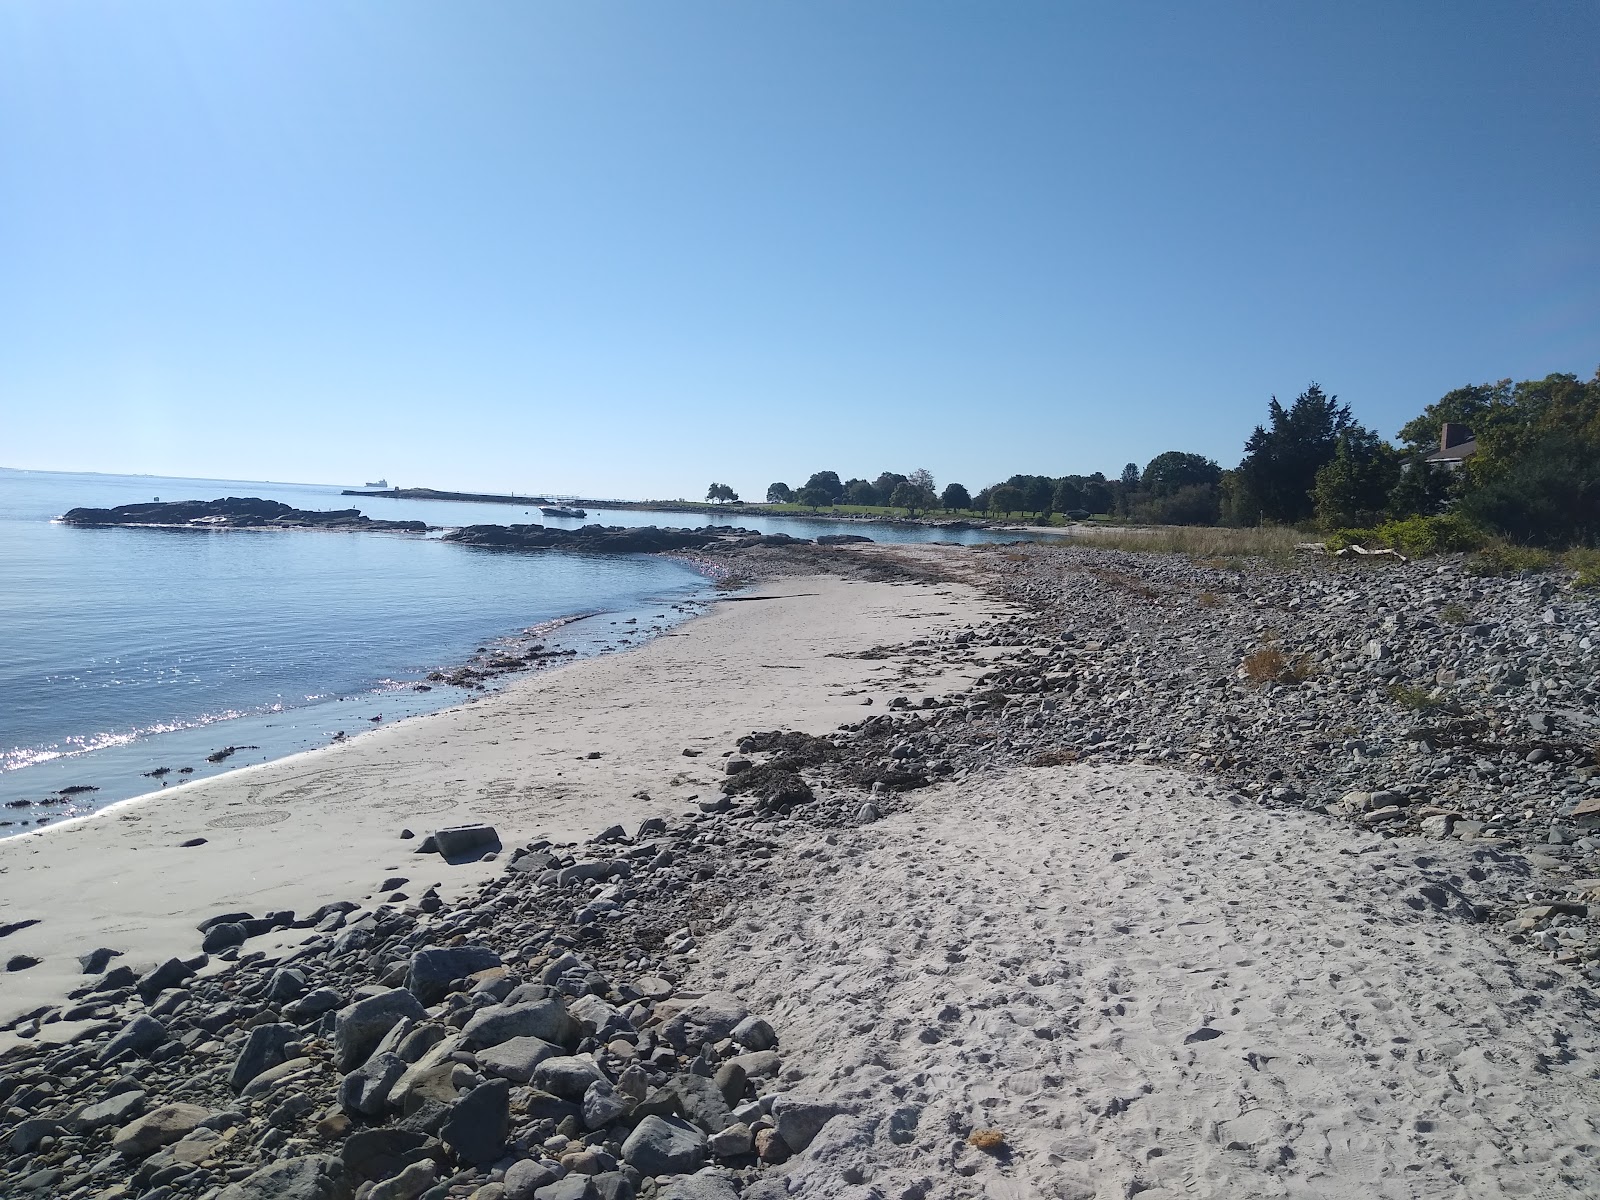 Zdjęcie New castle beach z powierzchnią jasny piasek i skały